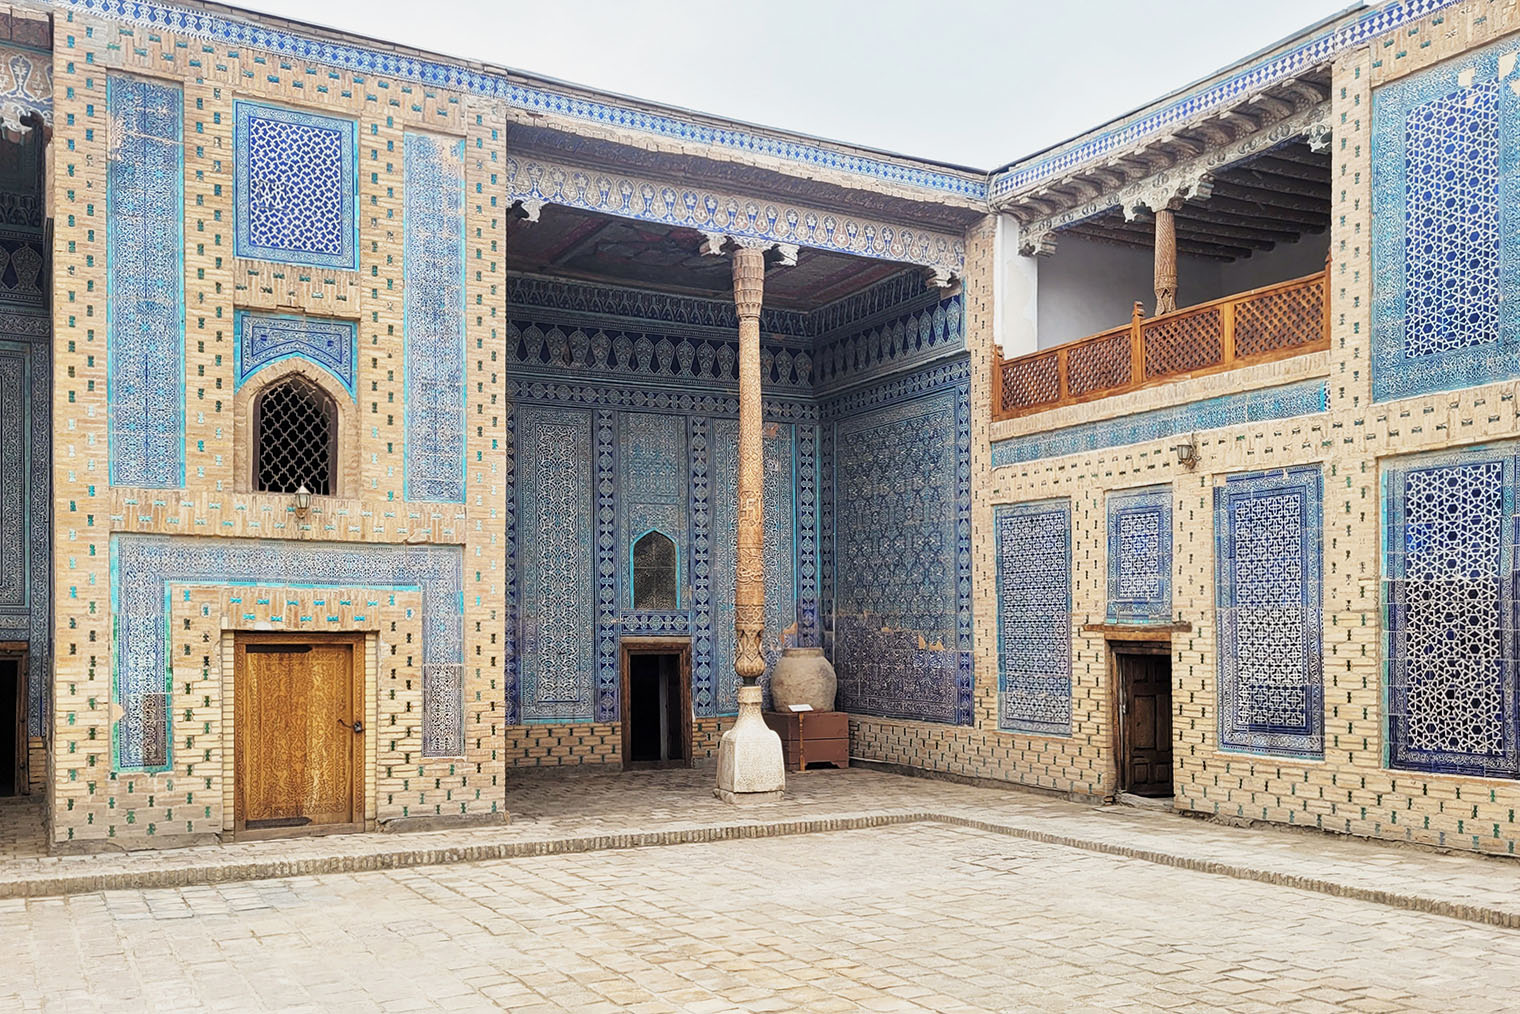 Дворец Таш-Хаули превосходит другие достопримечательности Хивы по богатству внутренней отделки. Фотография: Bgag / Wikimedia